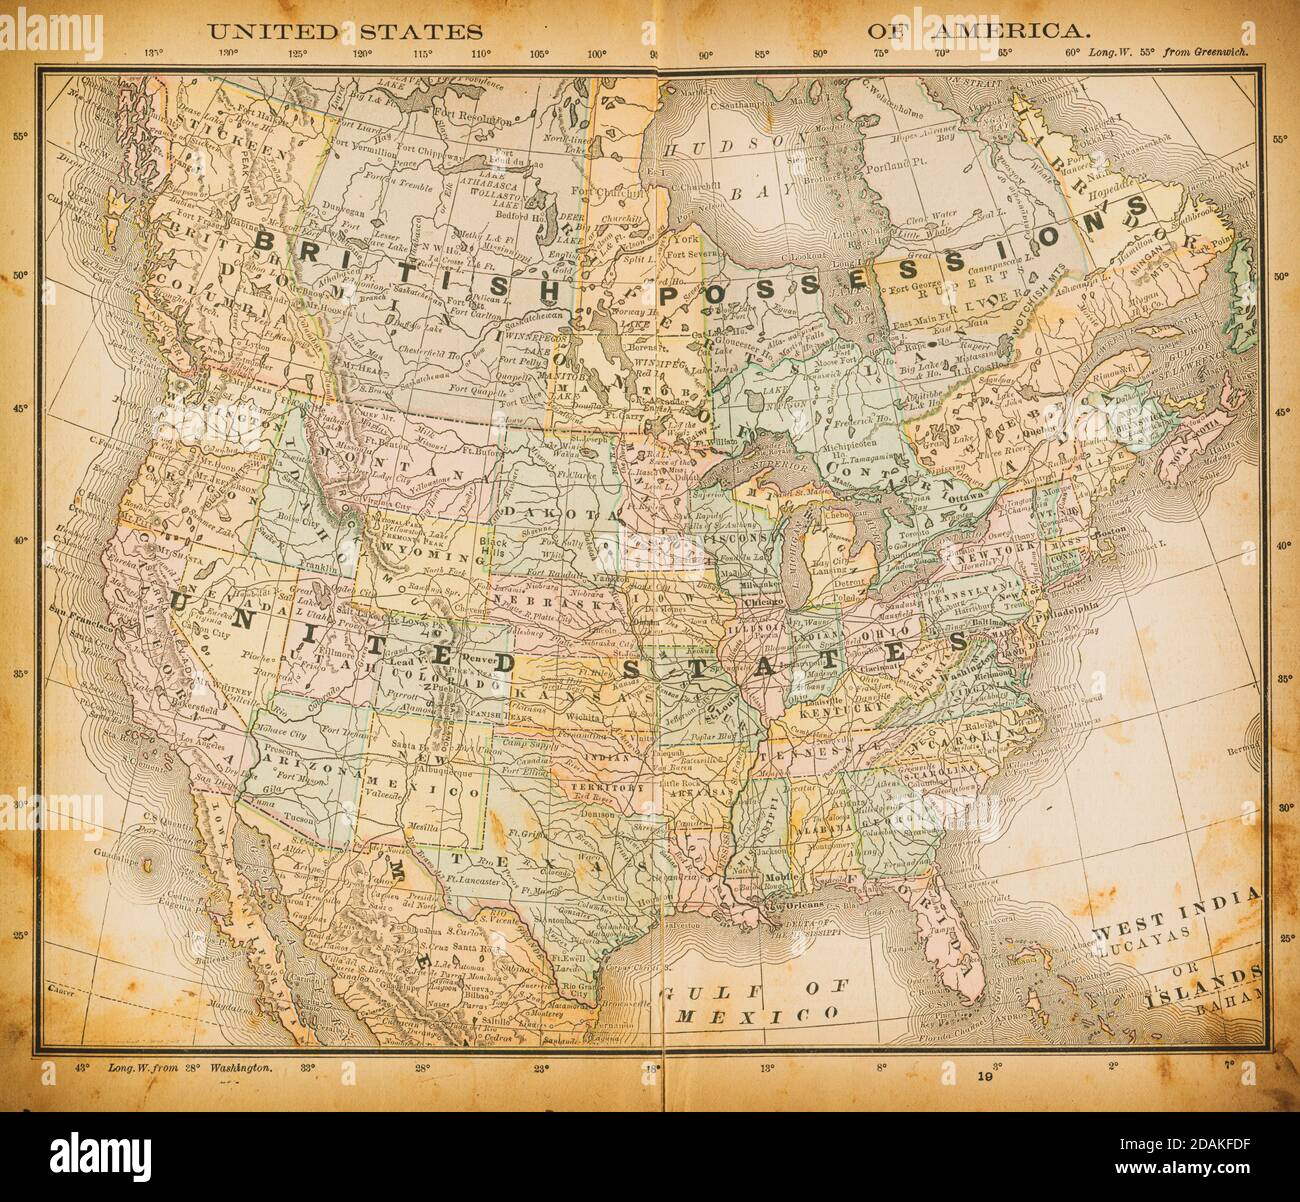 Karte der Vereinigten Staaten von Amerika aus dem 19. Jahrhundert. Veröffentlicht im New Dollar Atlas of the United States and Dominion of Canada. (Rand McNally & Co's, Chicago Stockfoto